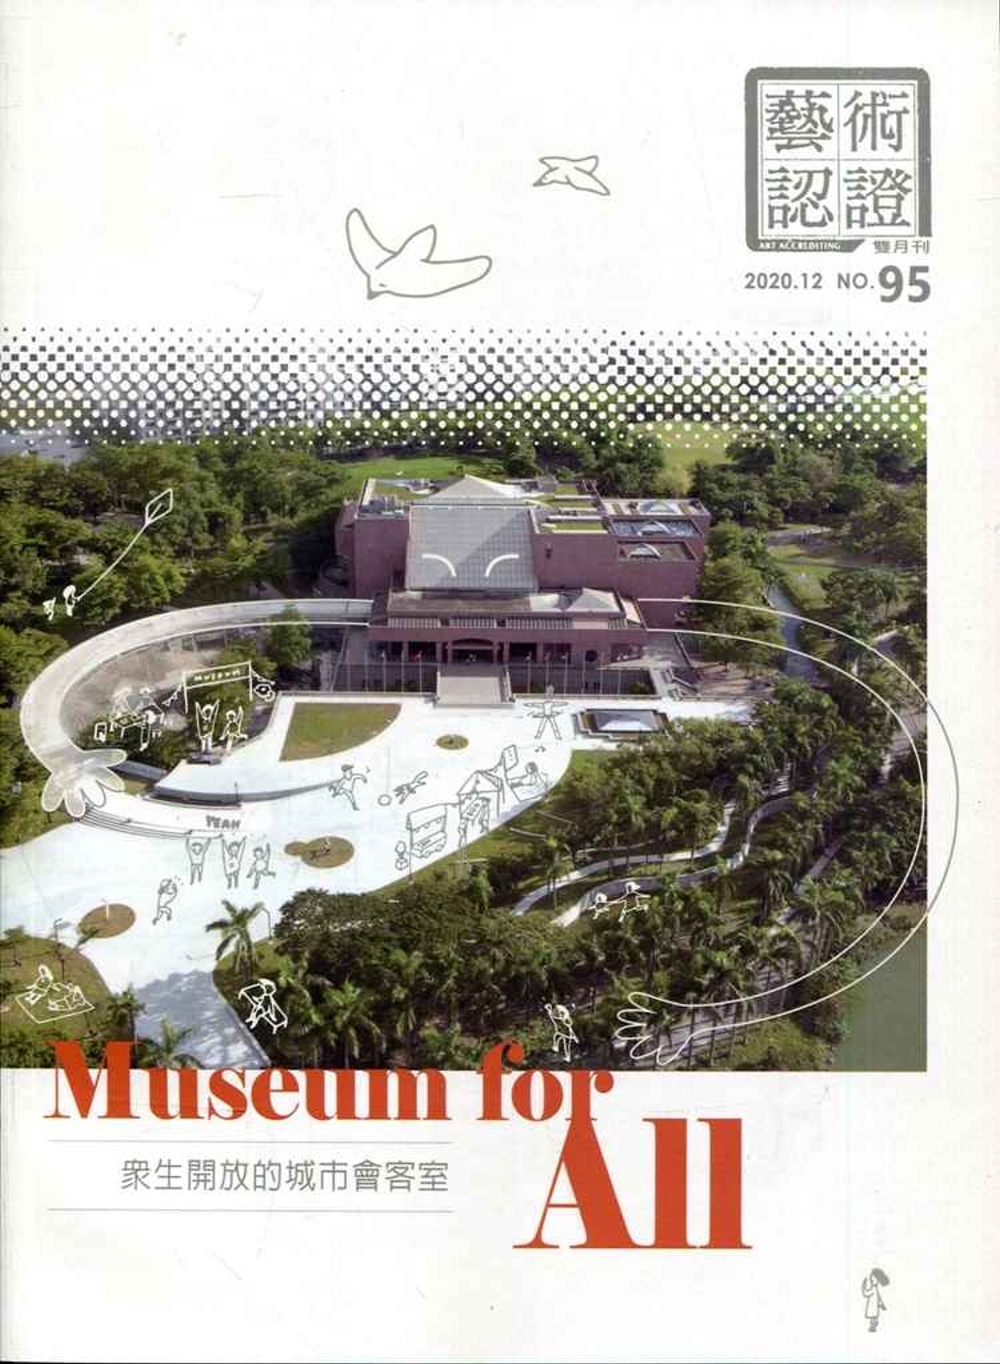 藝術認證(雙月刊)NO.95(2020.12) Museum for All：眾生開放的城市會客室